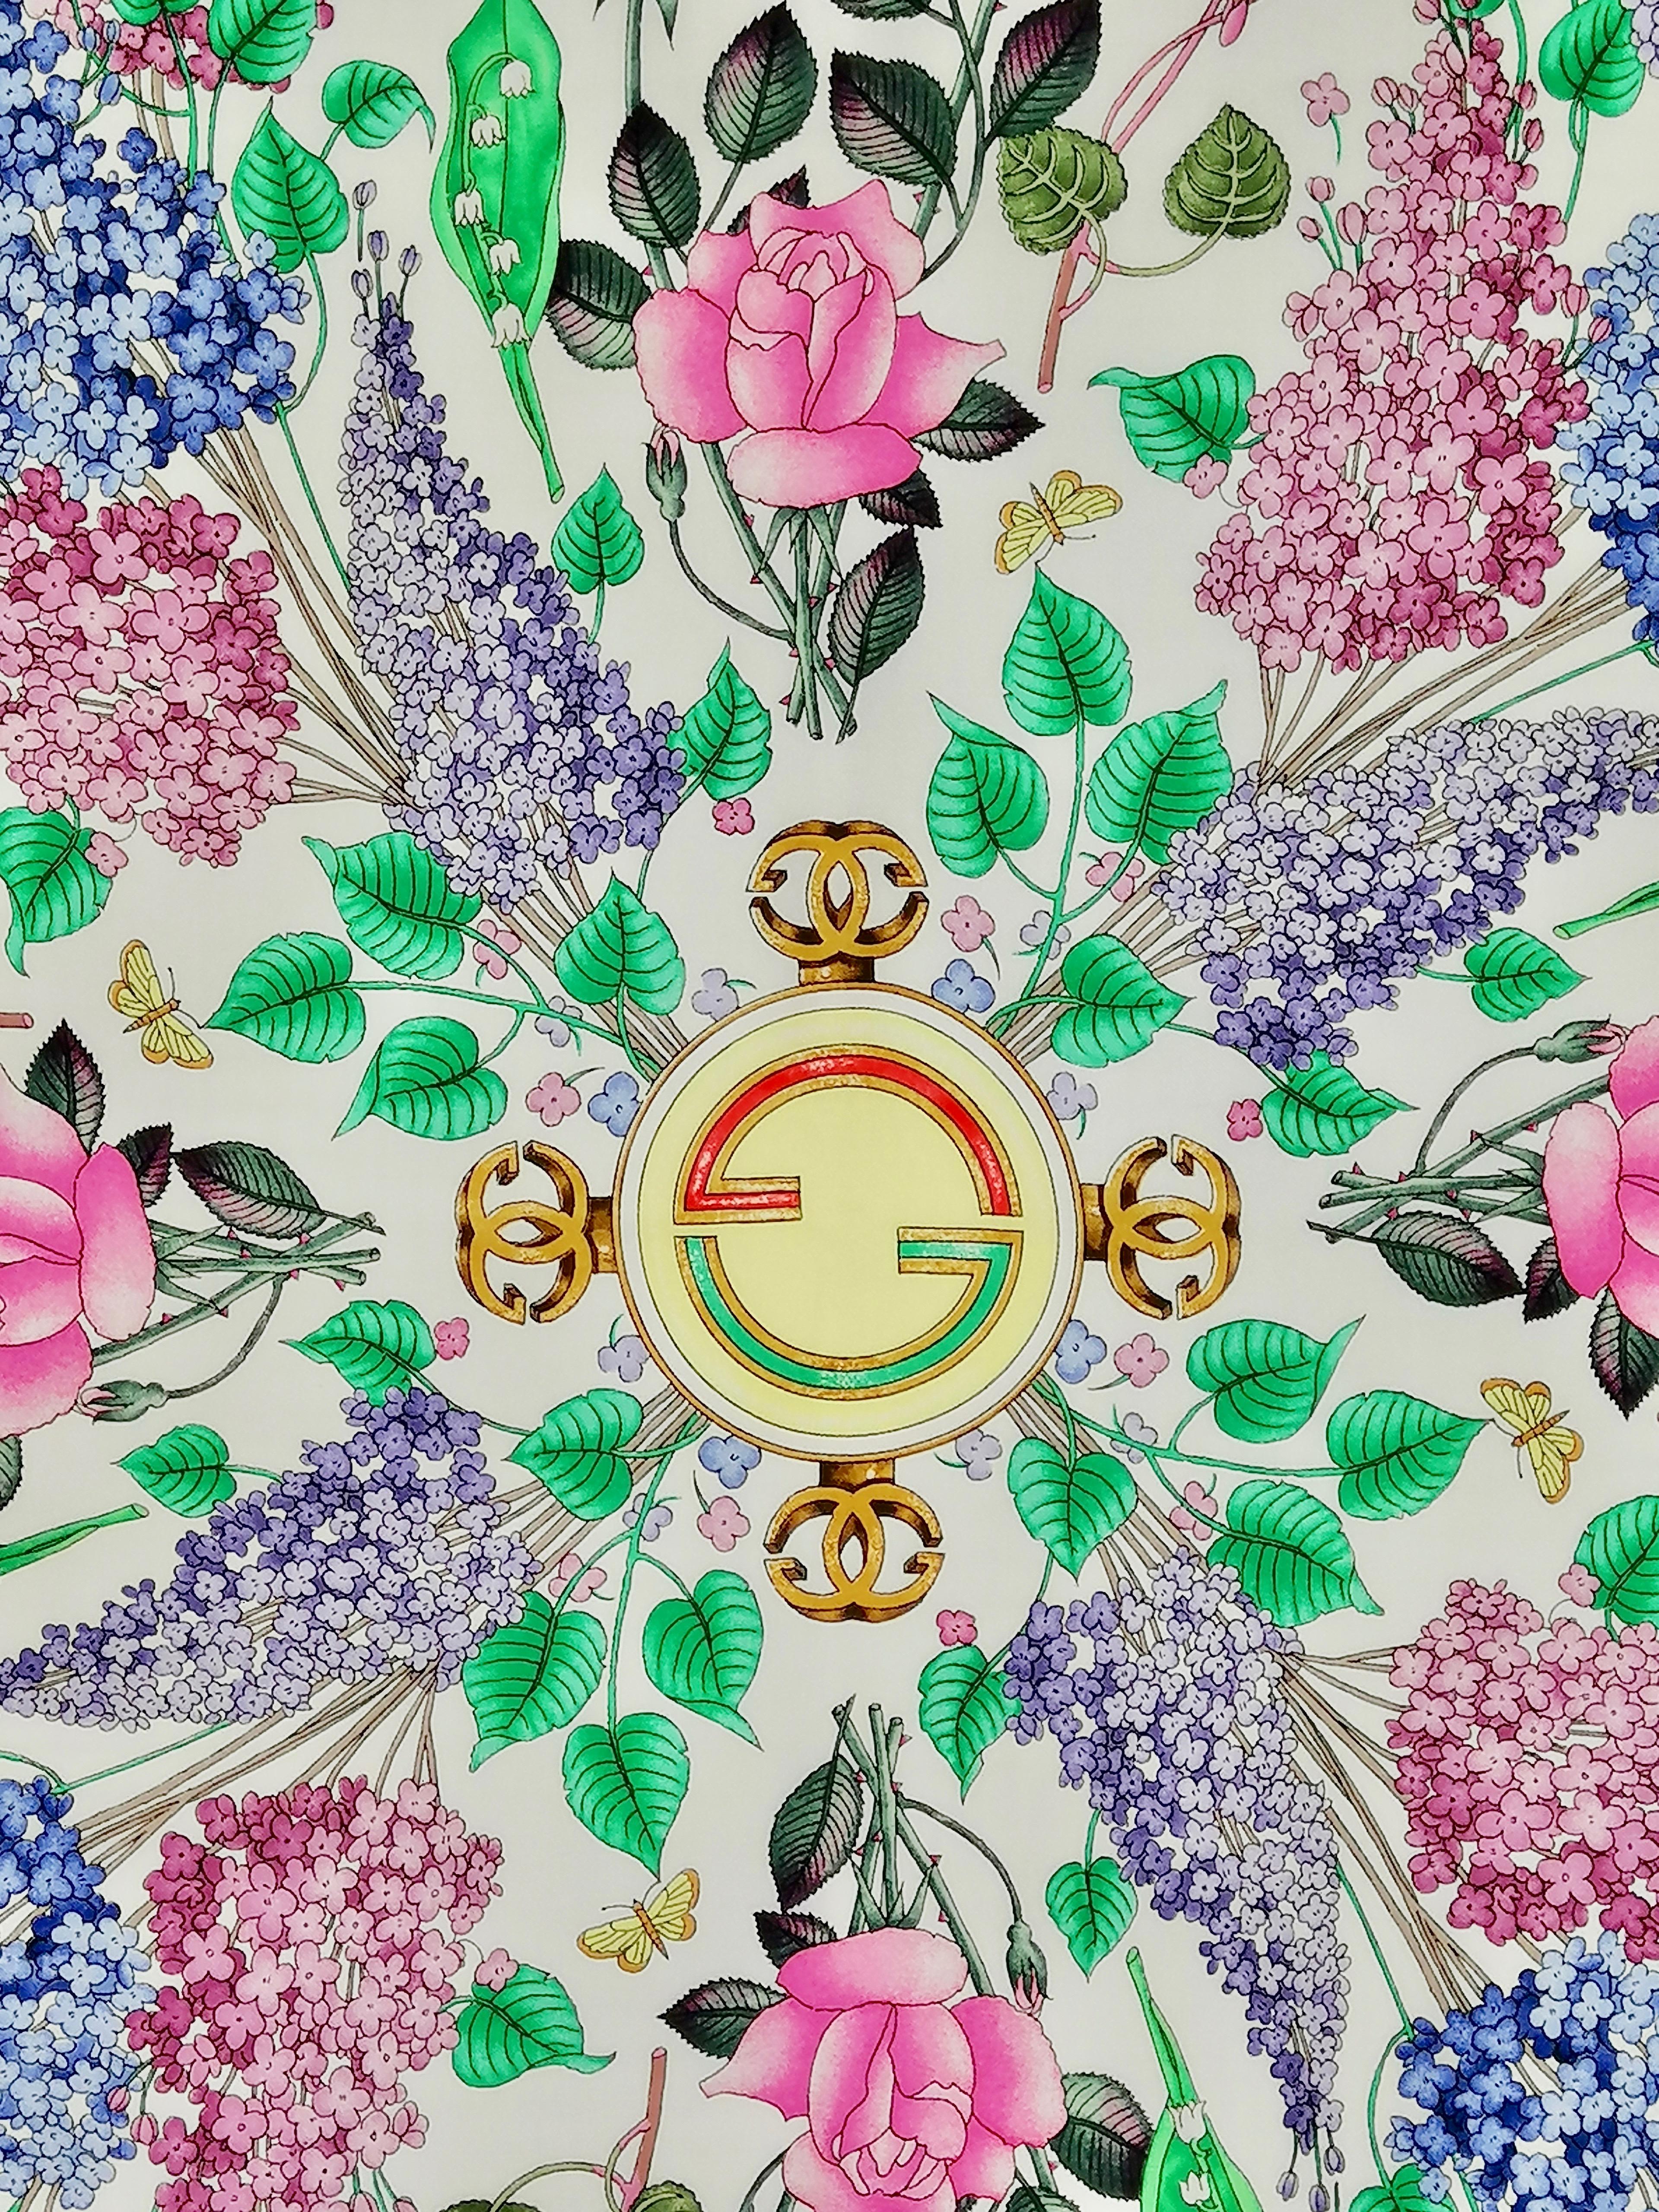 Écharpe en soie Gucci
Conçu par Vittorio Accornero - années 70
Ourlet roulé à la main
cm. 88 x 88 env.
Excellent état
Thème floral avec des lilas, des roses, des muguets et des cyclamens qui se détachent sur un fond blanc. Bordure bleu ciel.
